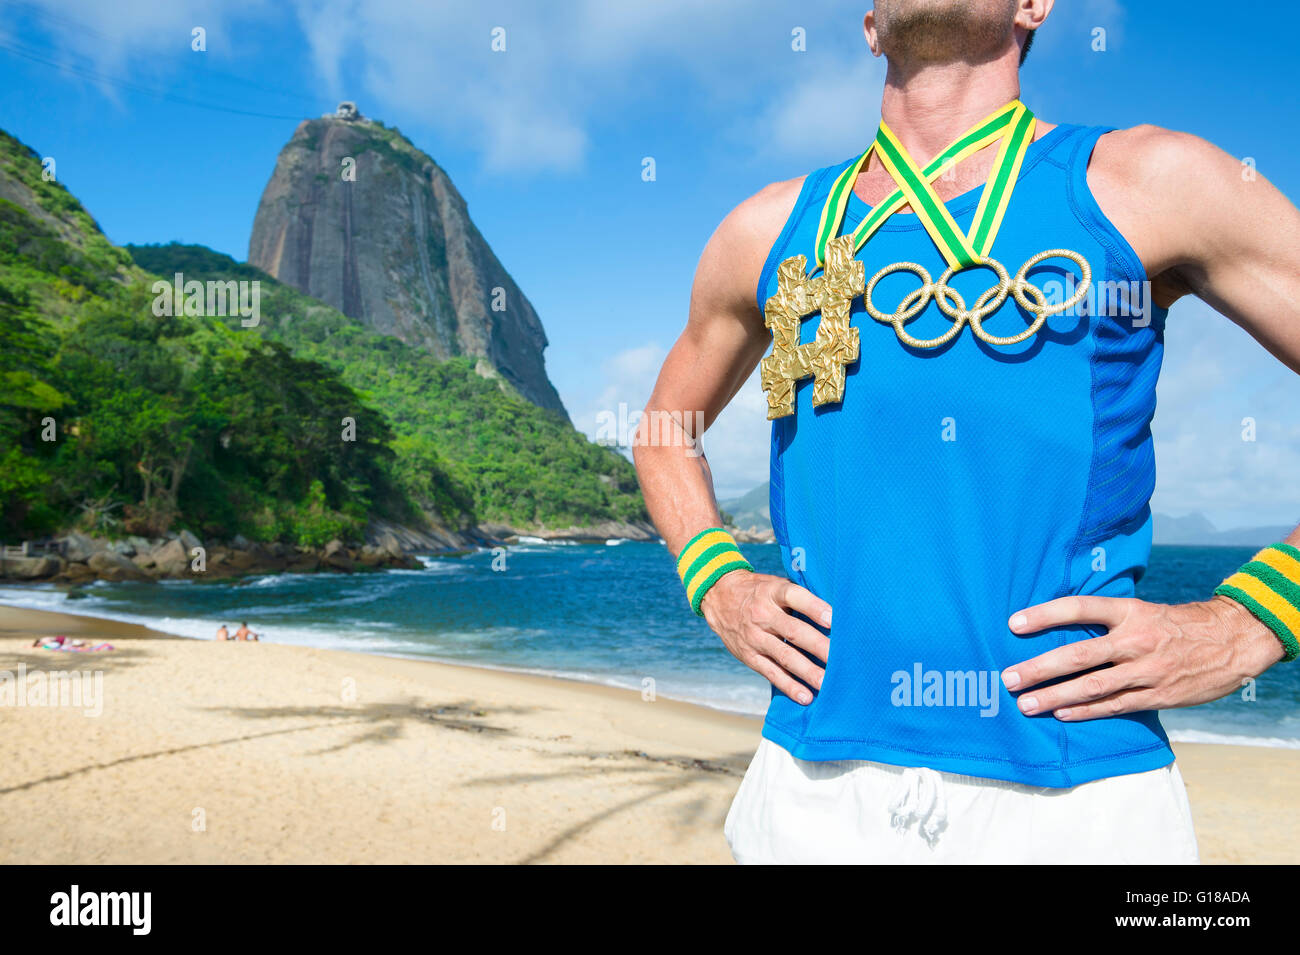 RIO DE JANEIRO - 10. März 2016: Athlet steht mit Olympischen Ringen gold Medaille mit Hashtag am Strand am Zuckerhut. Stockfoto